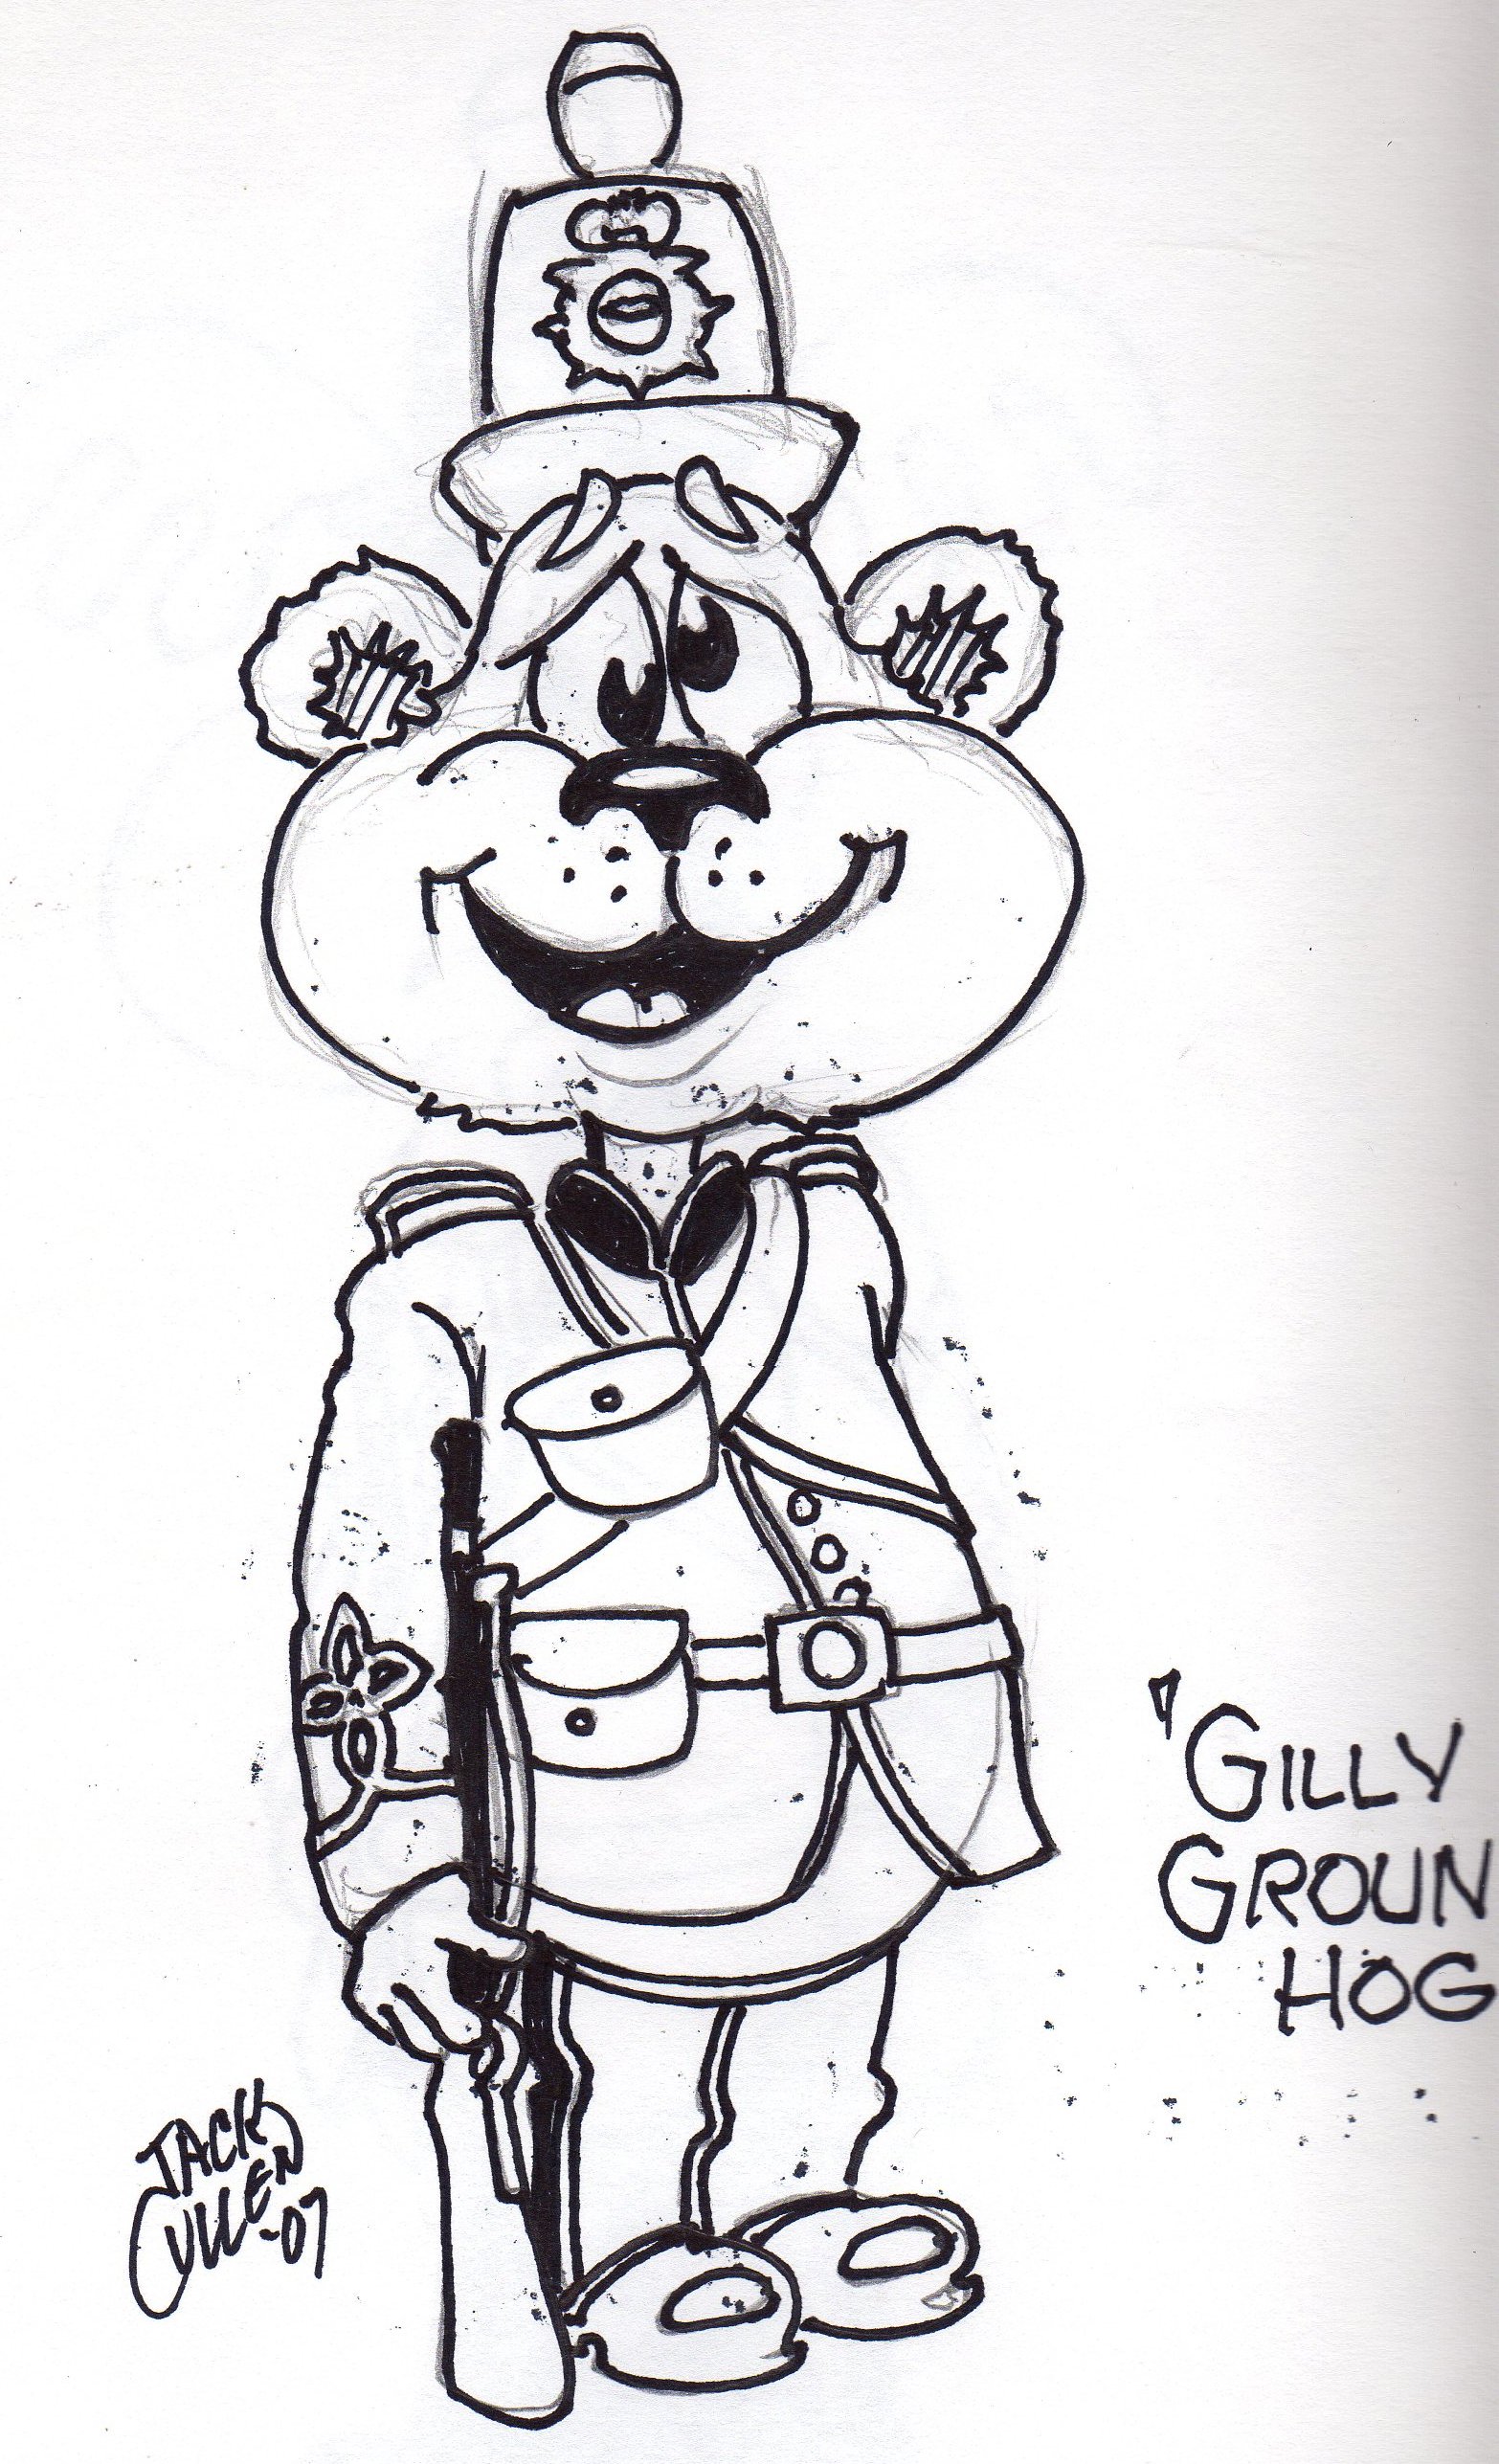 gillygroundhog2.jpg